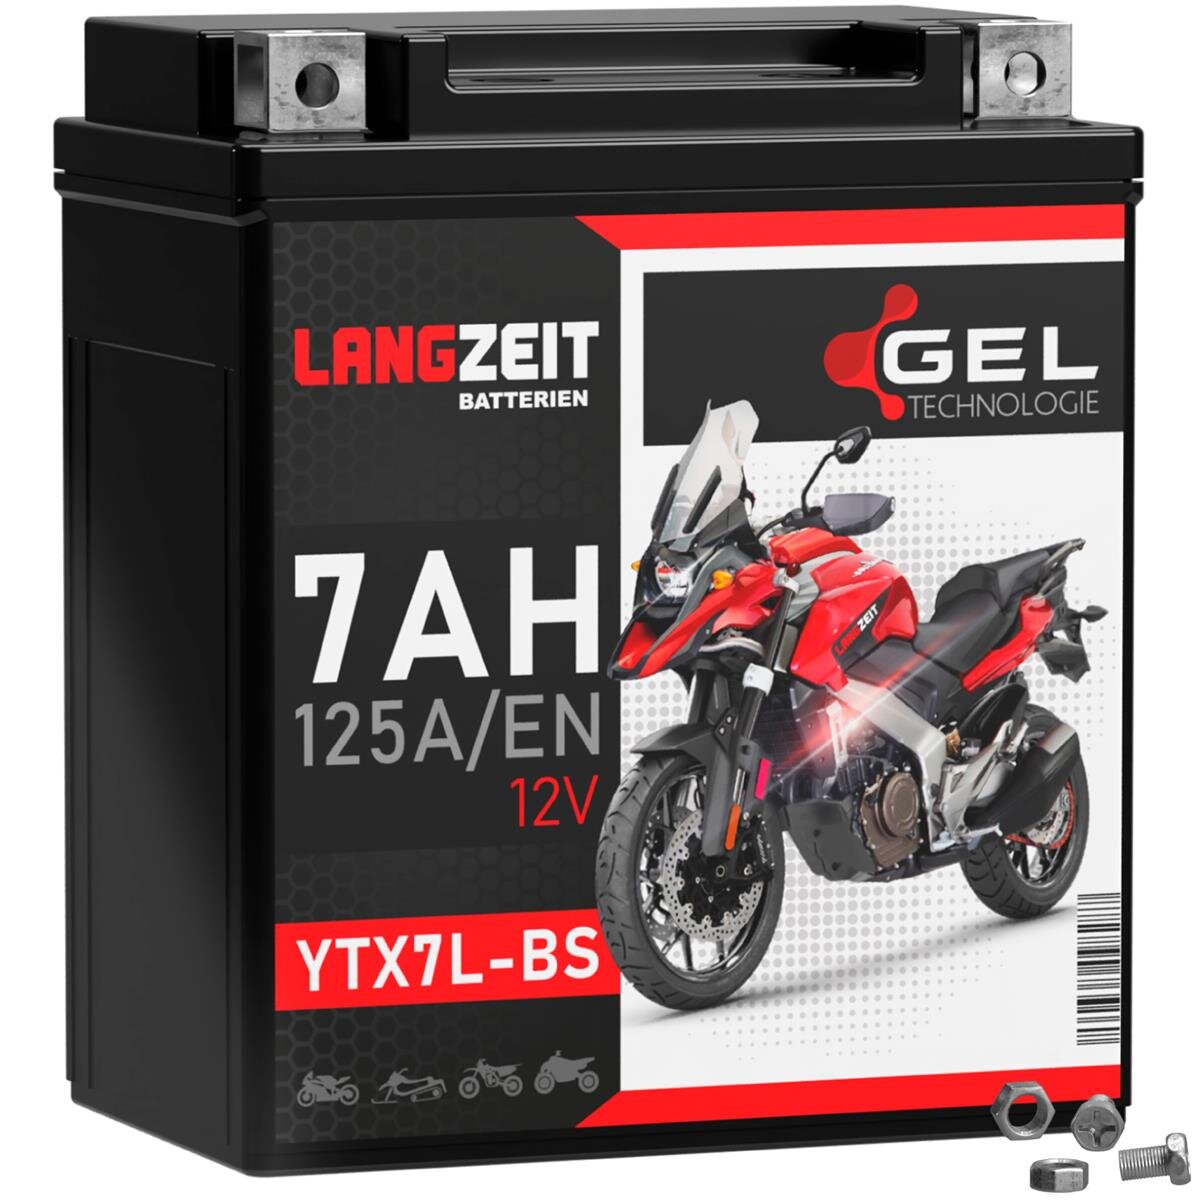 Langzeit Gel Motorradbatterie YTX7L-BS 7Ah 12V, 25,90 €